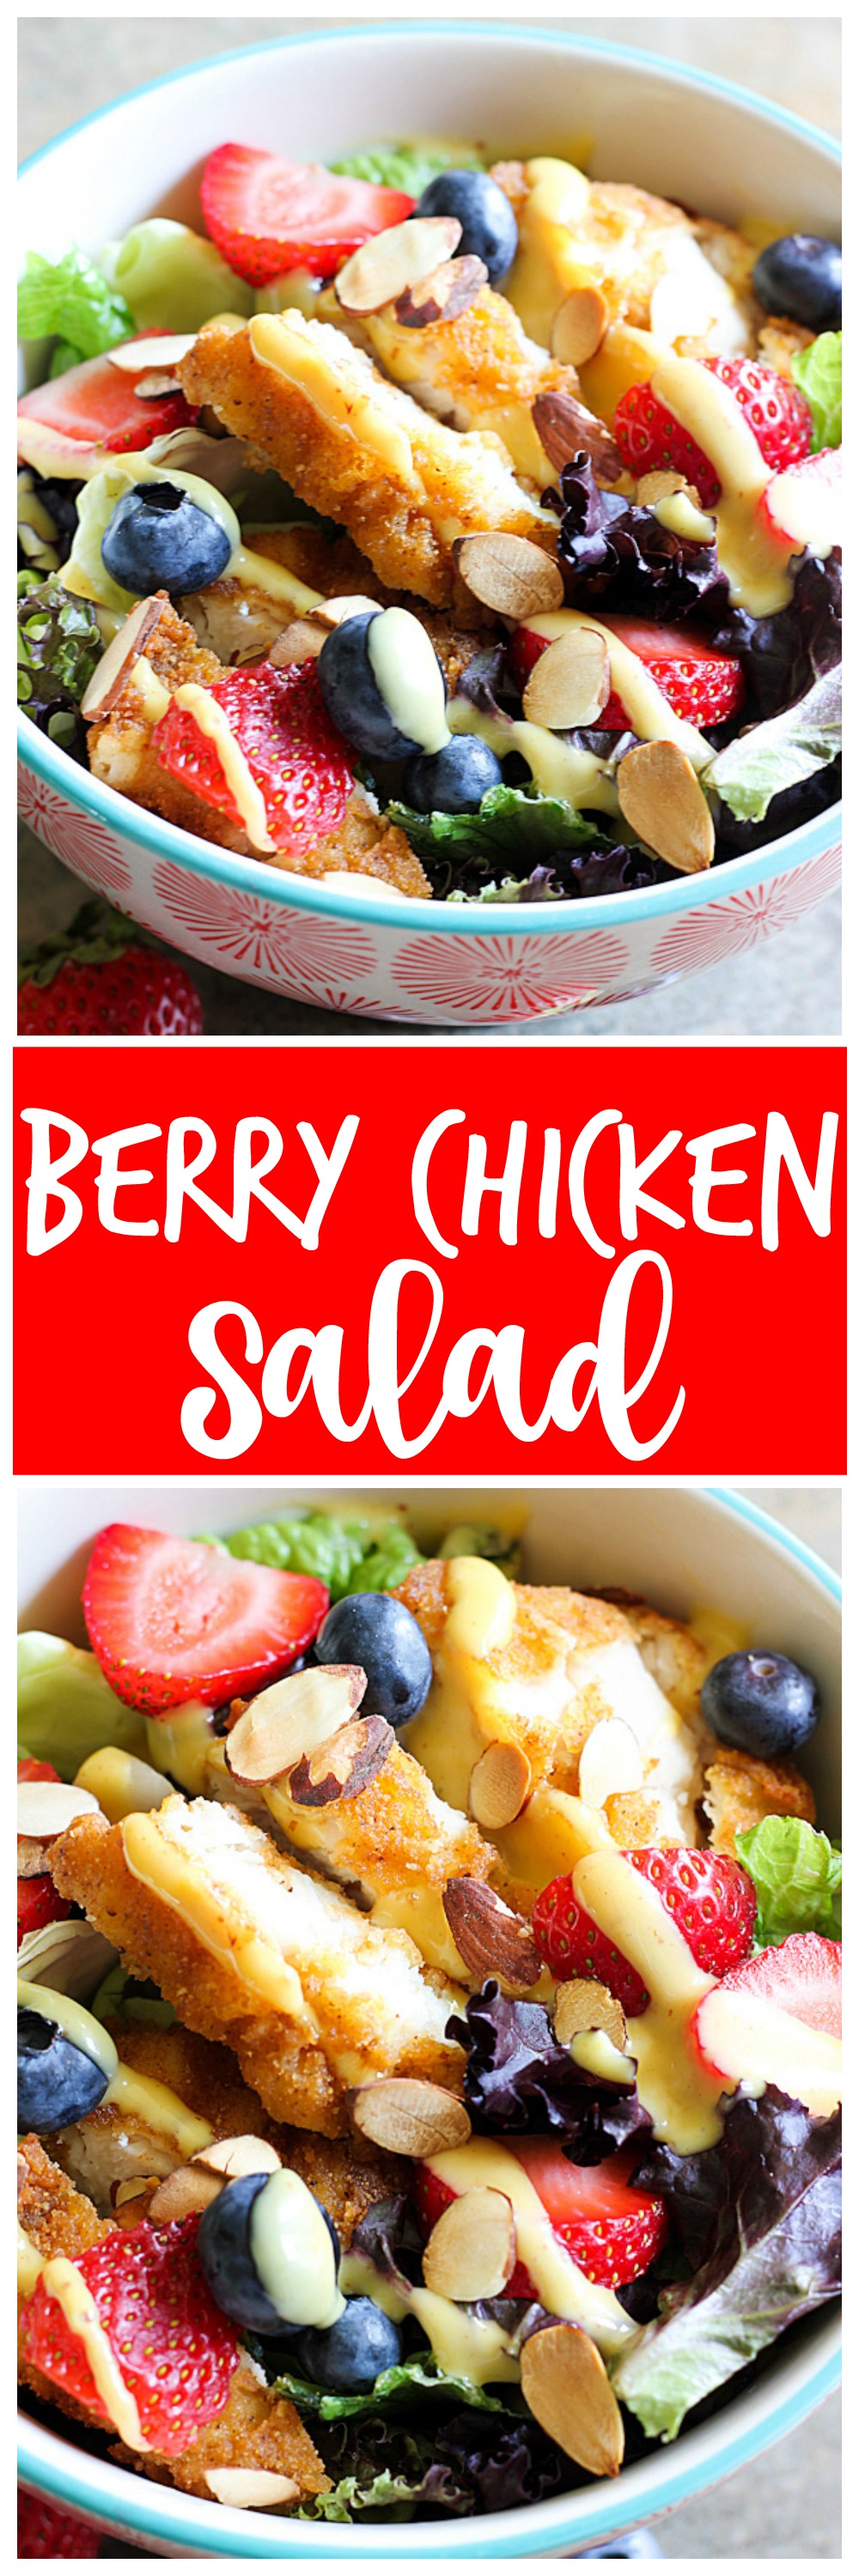 Berry Chicken Salad collage